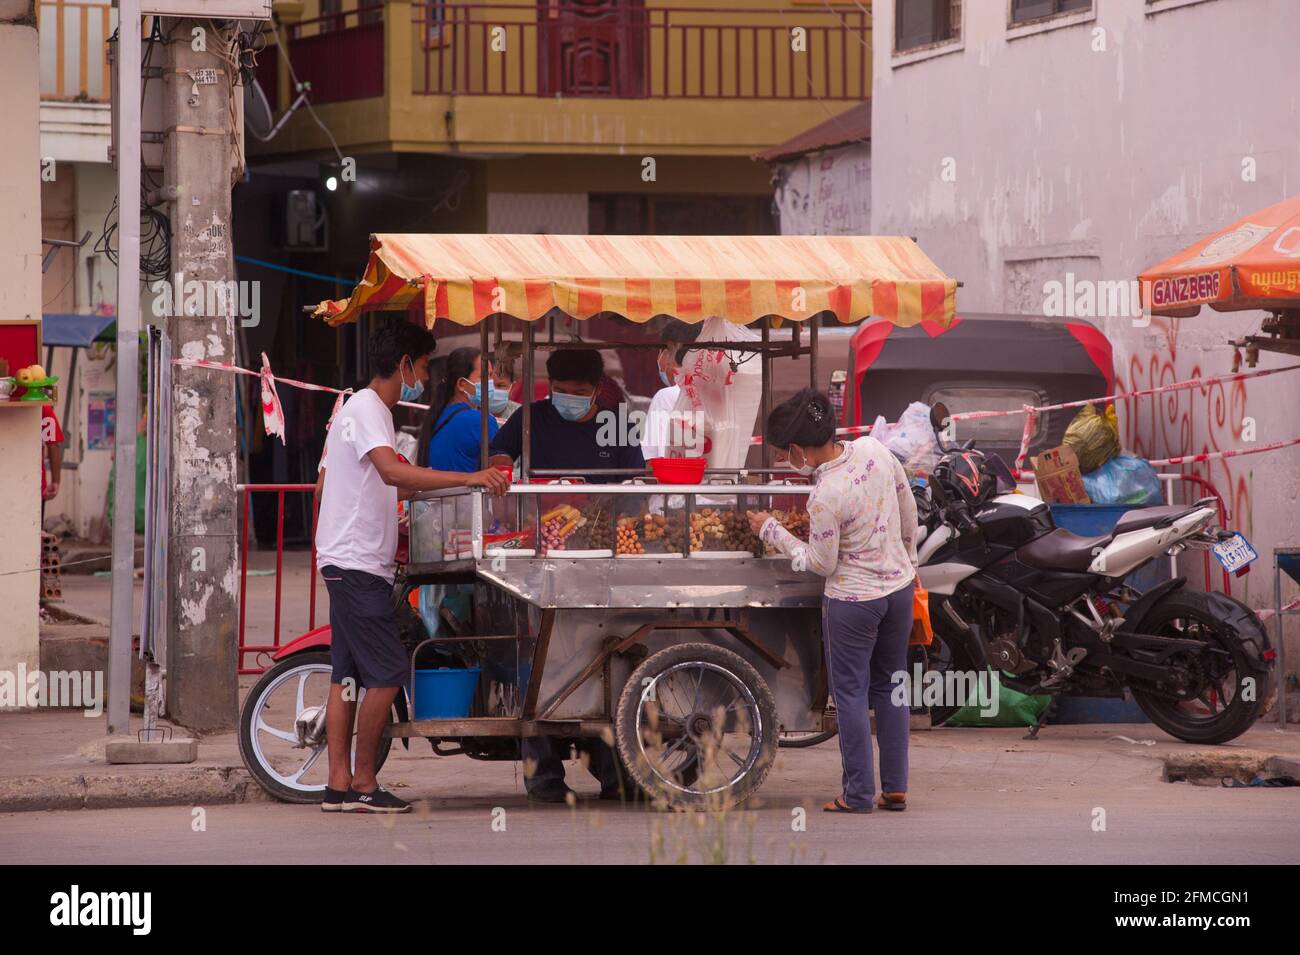 Phnom Penh, Cambogia. 8 maggio 2021. Dopo 3 settimane di chiusura totale della città, il governo ha diviso Phnom Penh in 3 zone colorate (rosso, arancione e giallo) a causa dell'aumento di COVID in corso. Qui, un carrello mobile di cibo sta vendendo barbecue all'ingresso di una 'zona arancione', Credito: Kraig Lieb / Alamy Live News Foto Stock